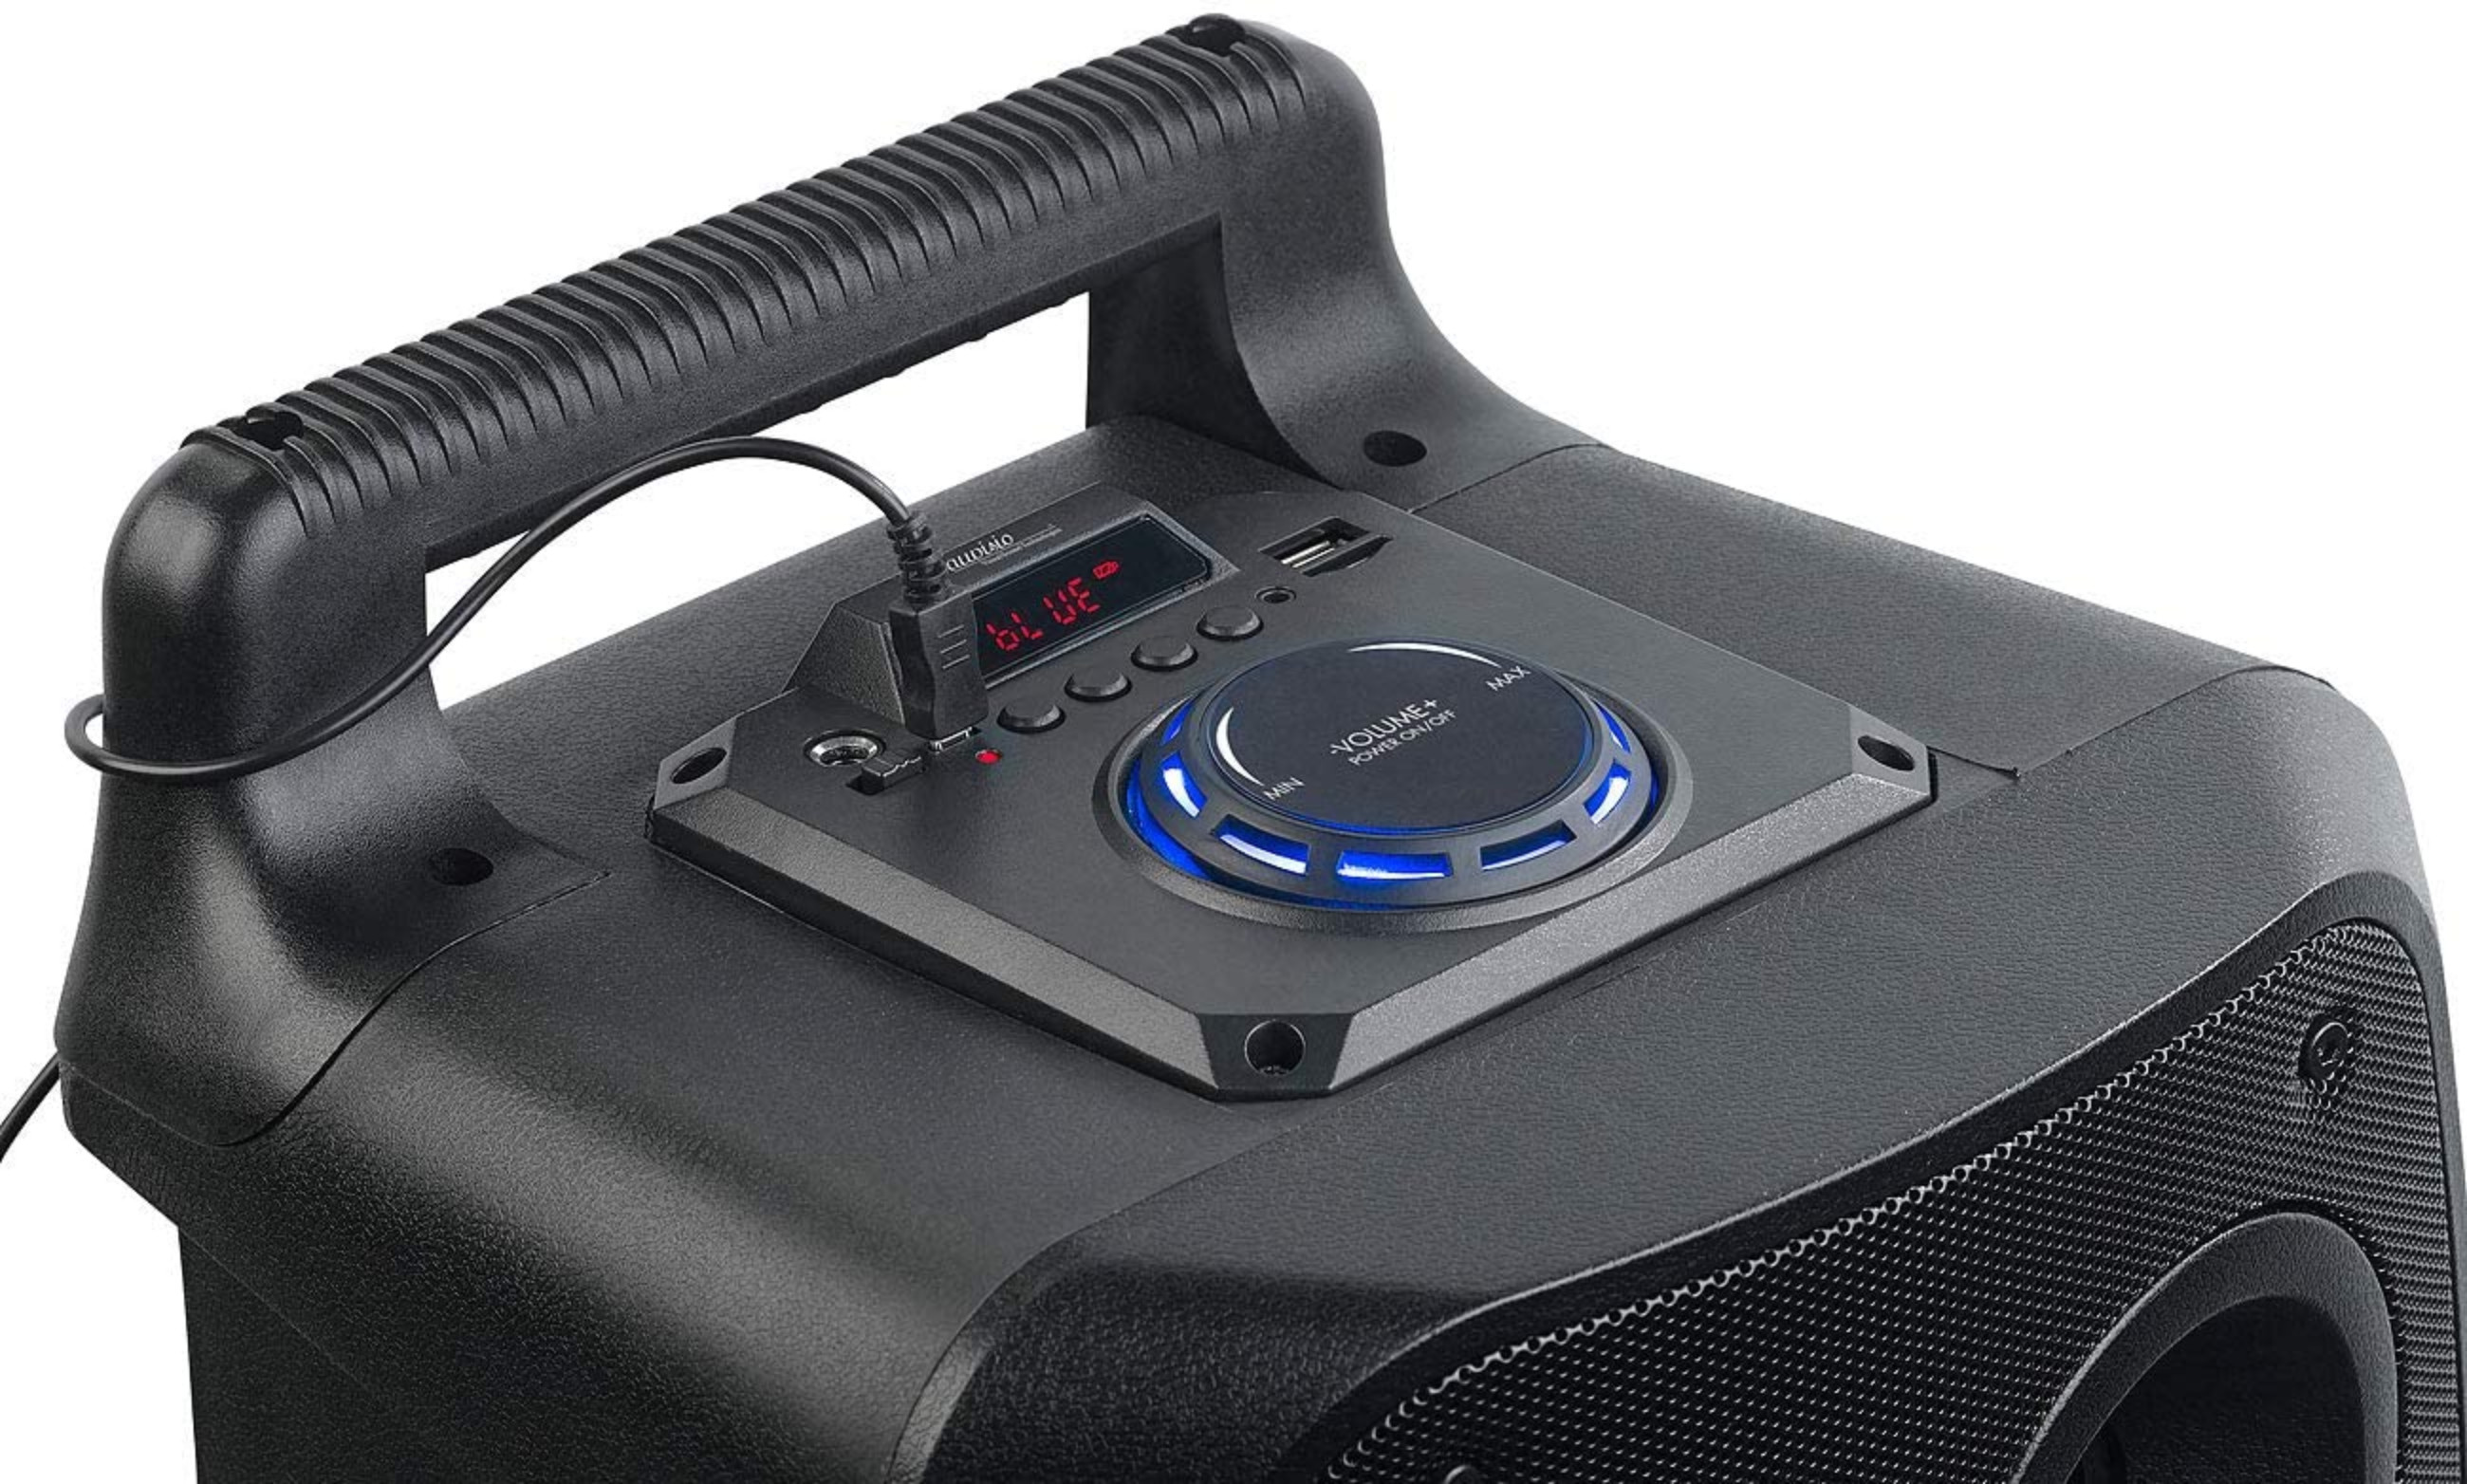 AUVISIO schwarz) Partylautsprecher Bluetooth Lautsprecher (Aktiv-Lautsprecher,